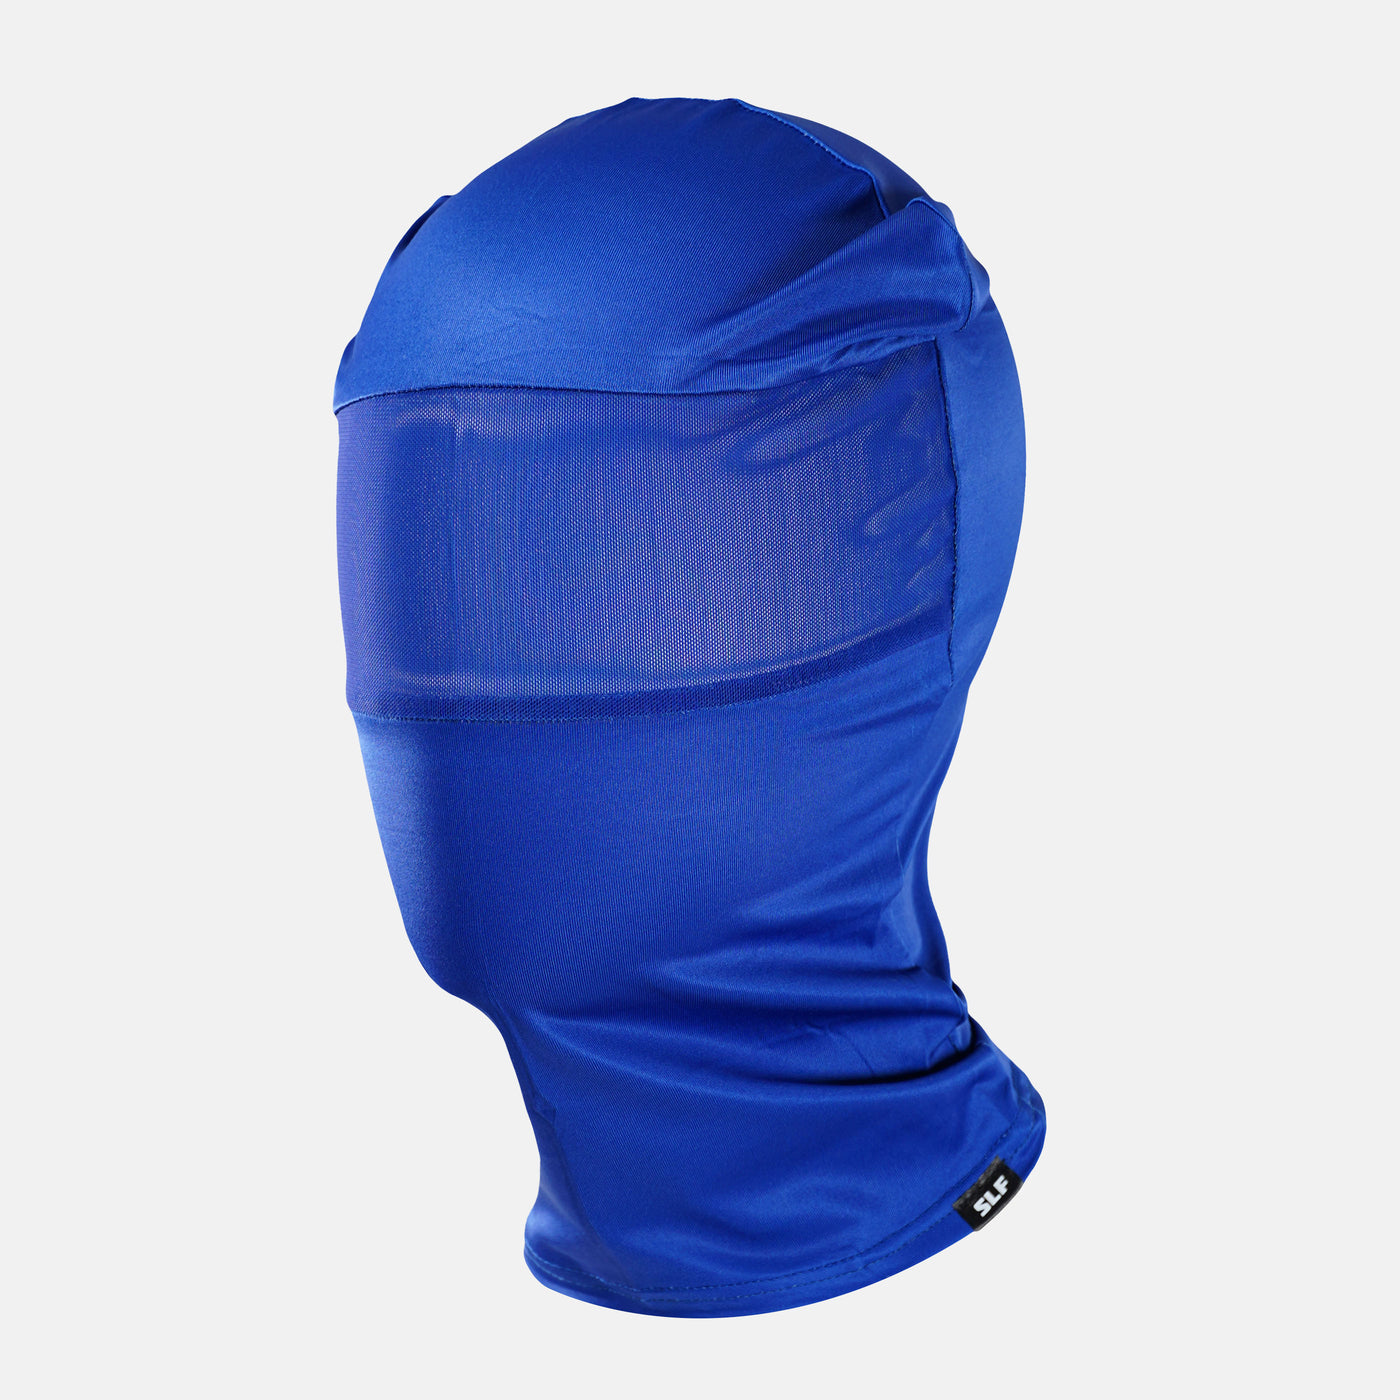 Hue Royal Blue Head Bag Mask